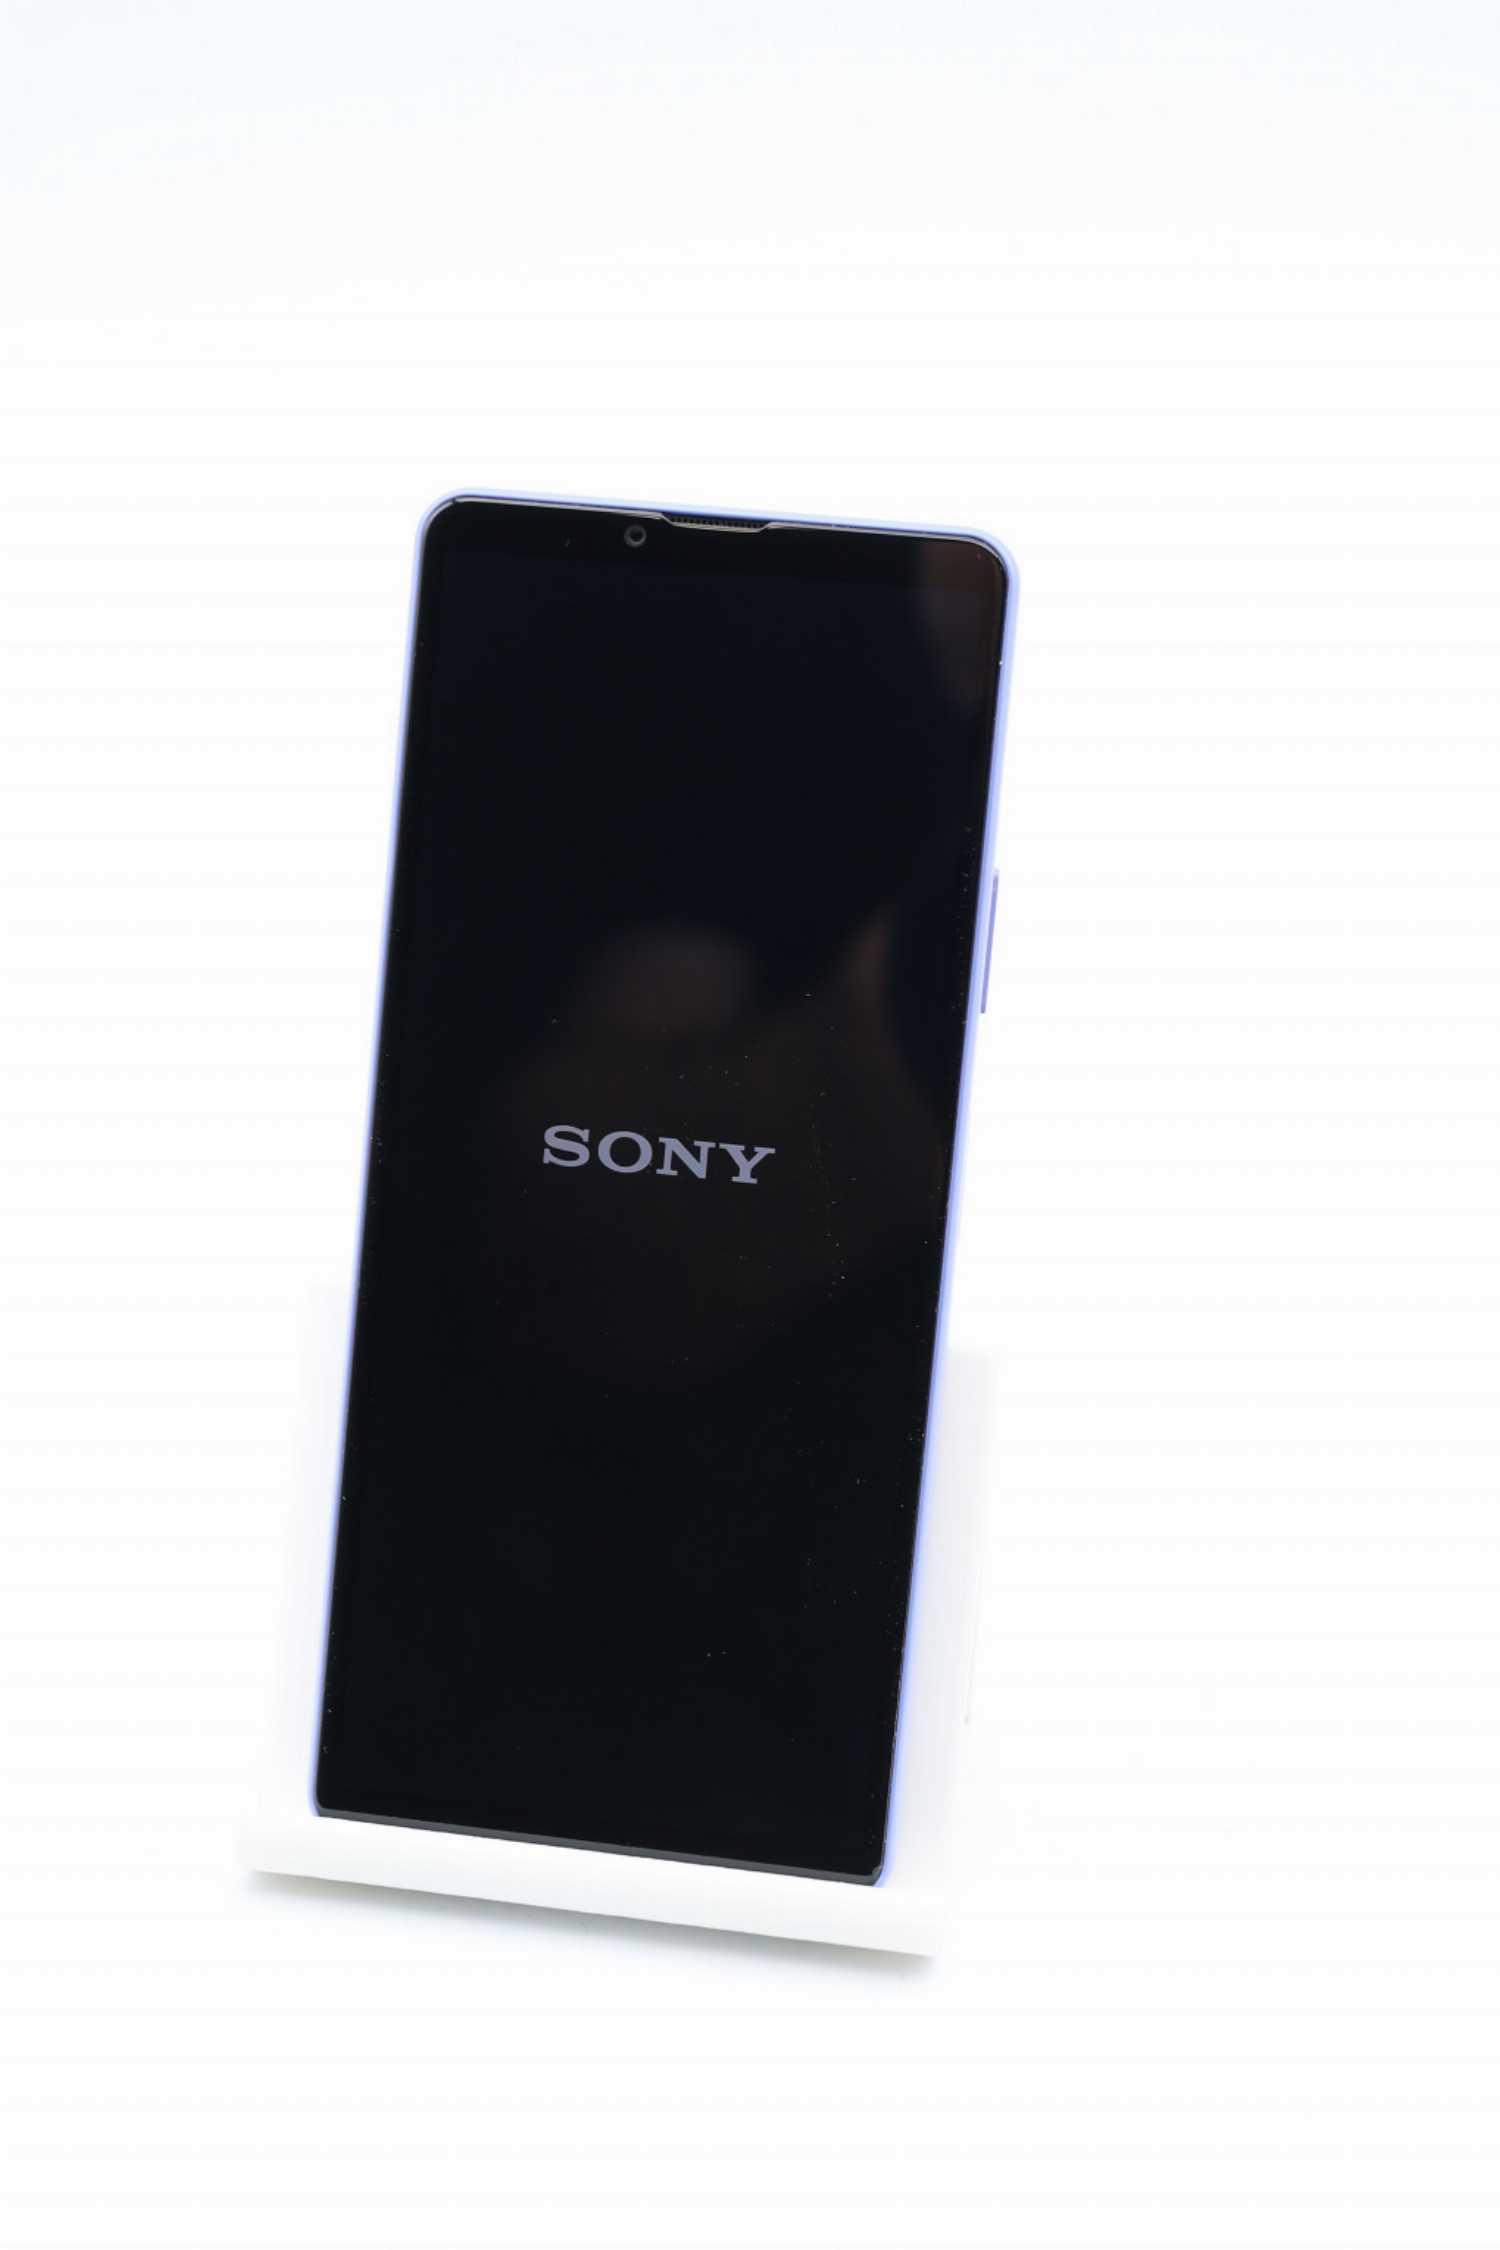 tecgarden 128GB | 10 Zoll, 5.000-mAh, (6 5G lavender IV Xperia Smartphone lila) 12 Octa-Core, Sony MP,